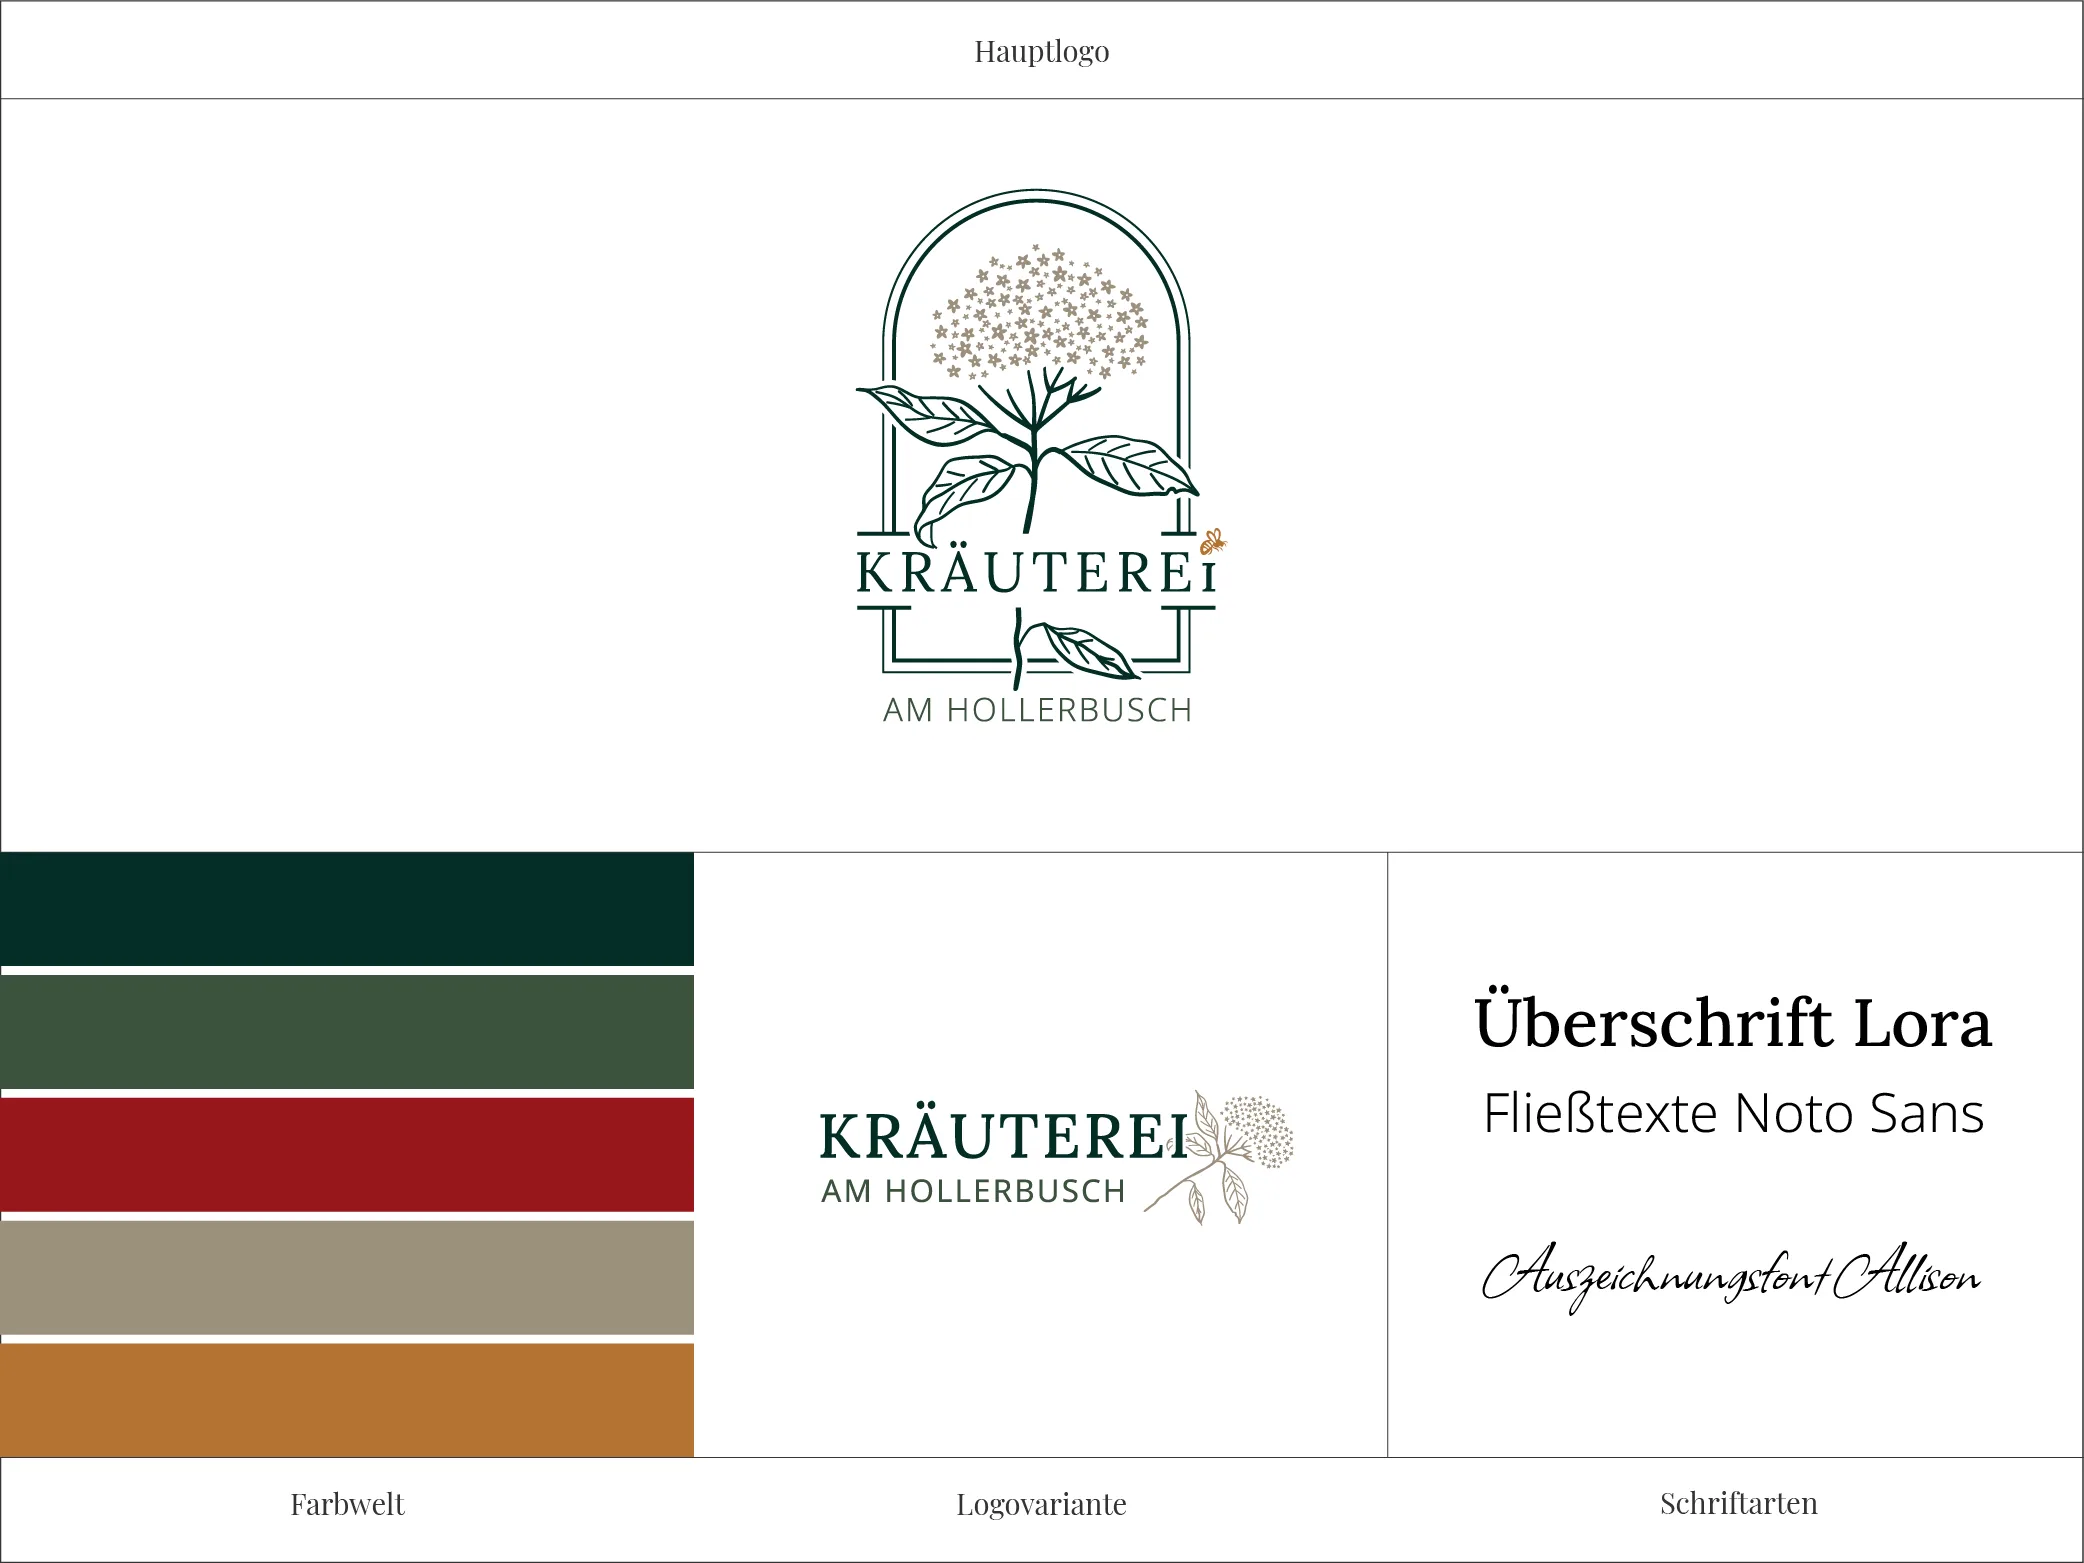 Logo der Kräuterei am Hollerbusch mit den ausgewählten Markenfarben, Schriftarten und einer Logovariante